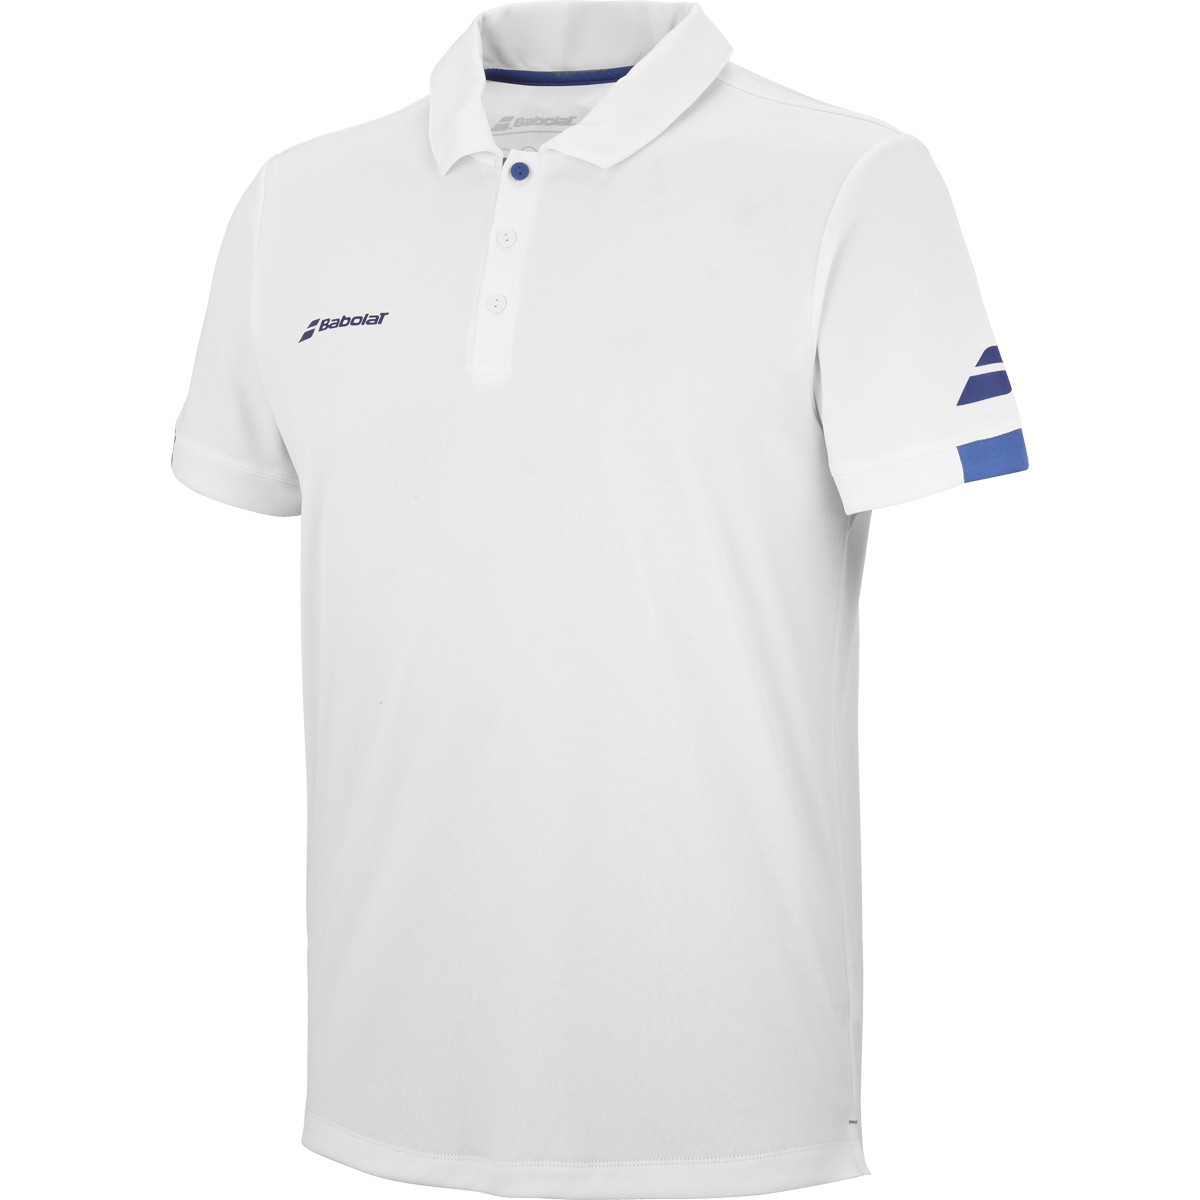 Теннисная футболка мужская Babolat Play Polo Men white/blue поло